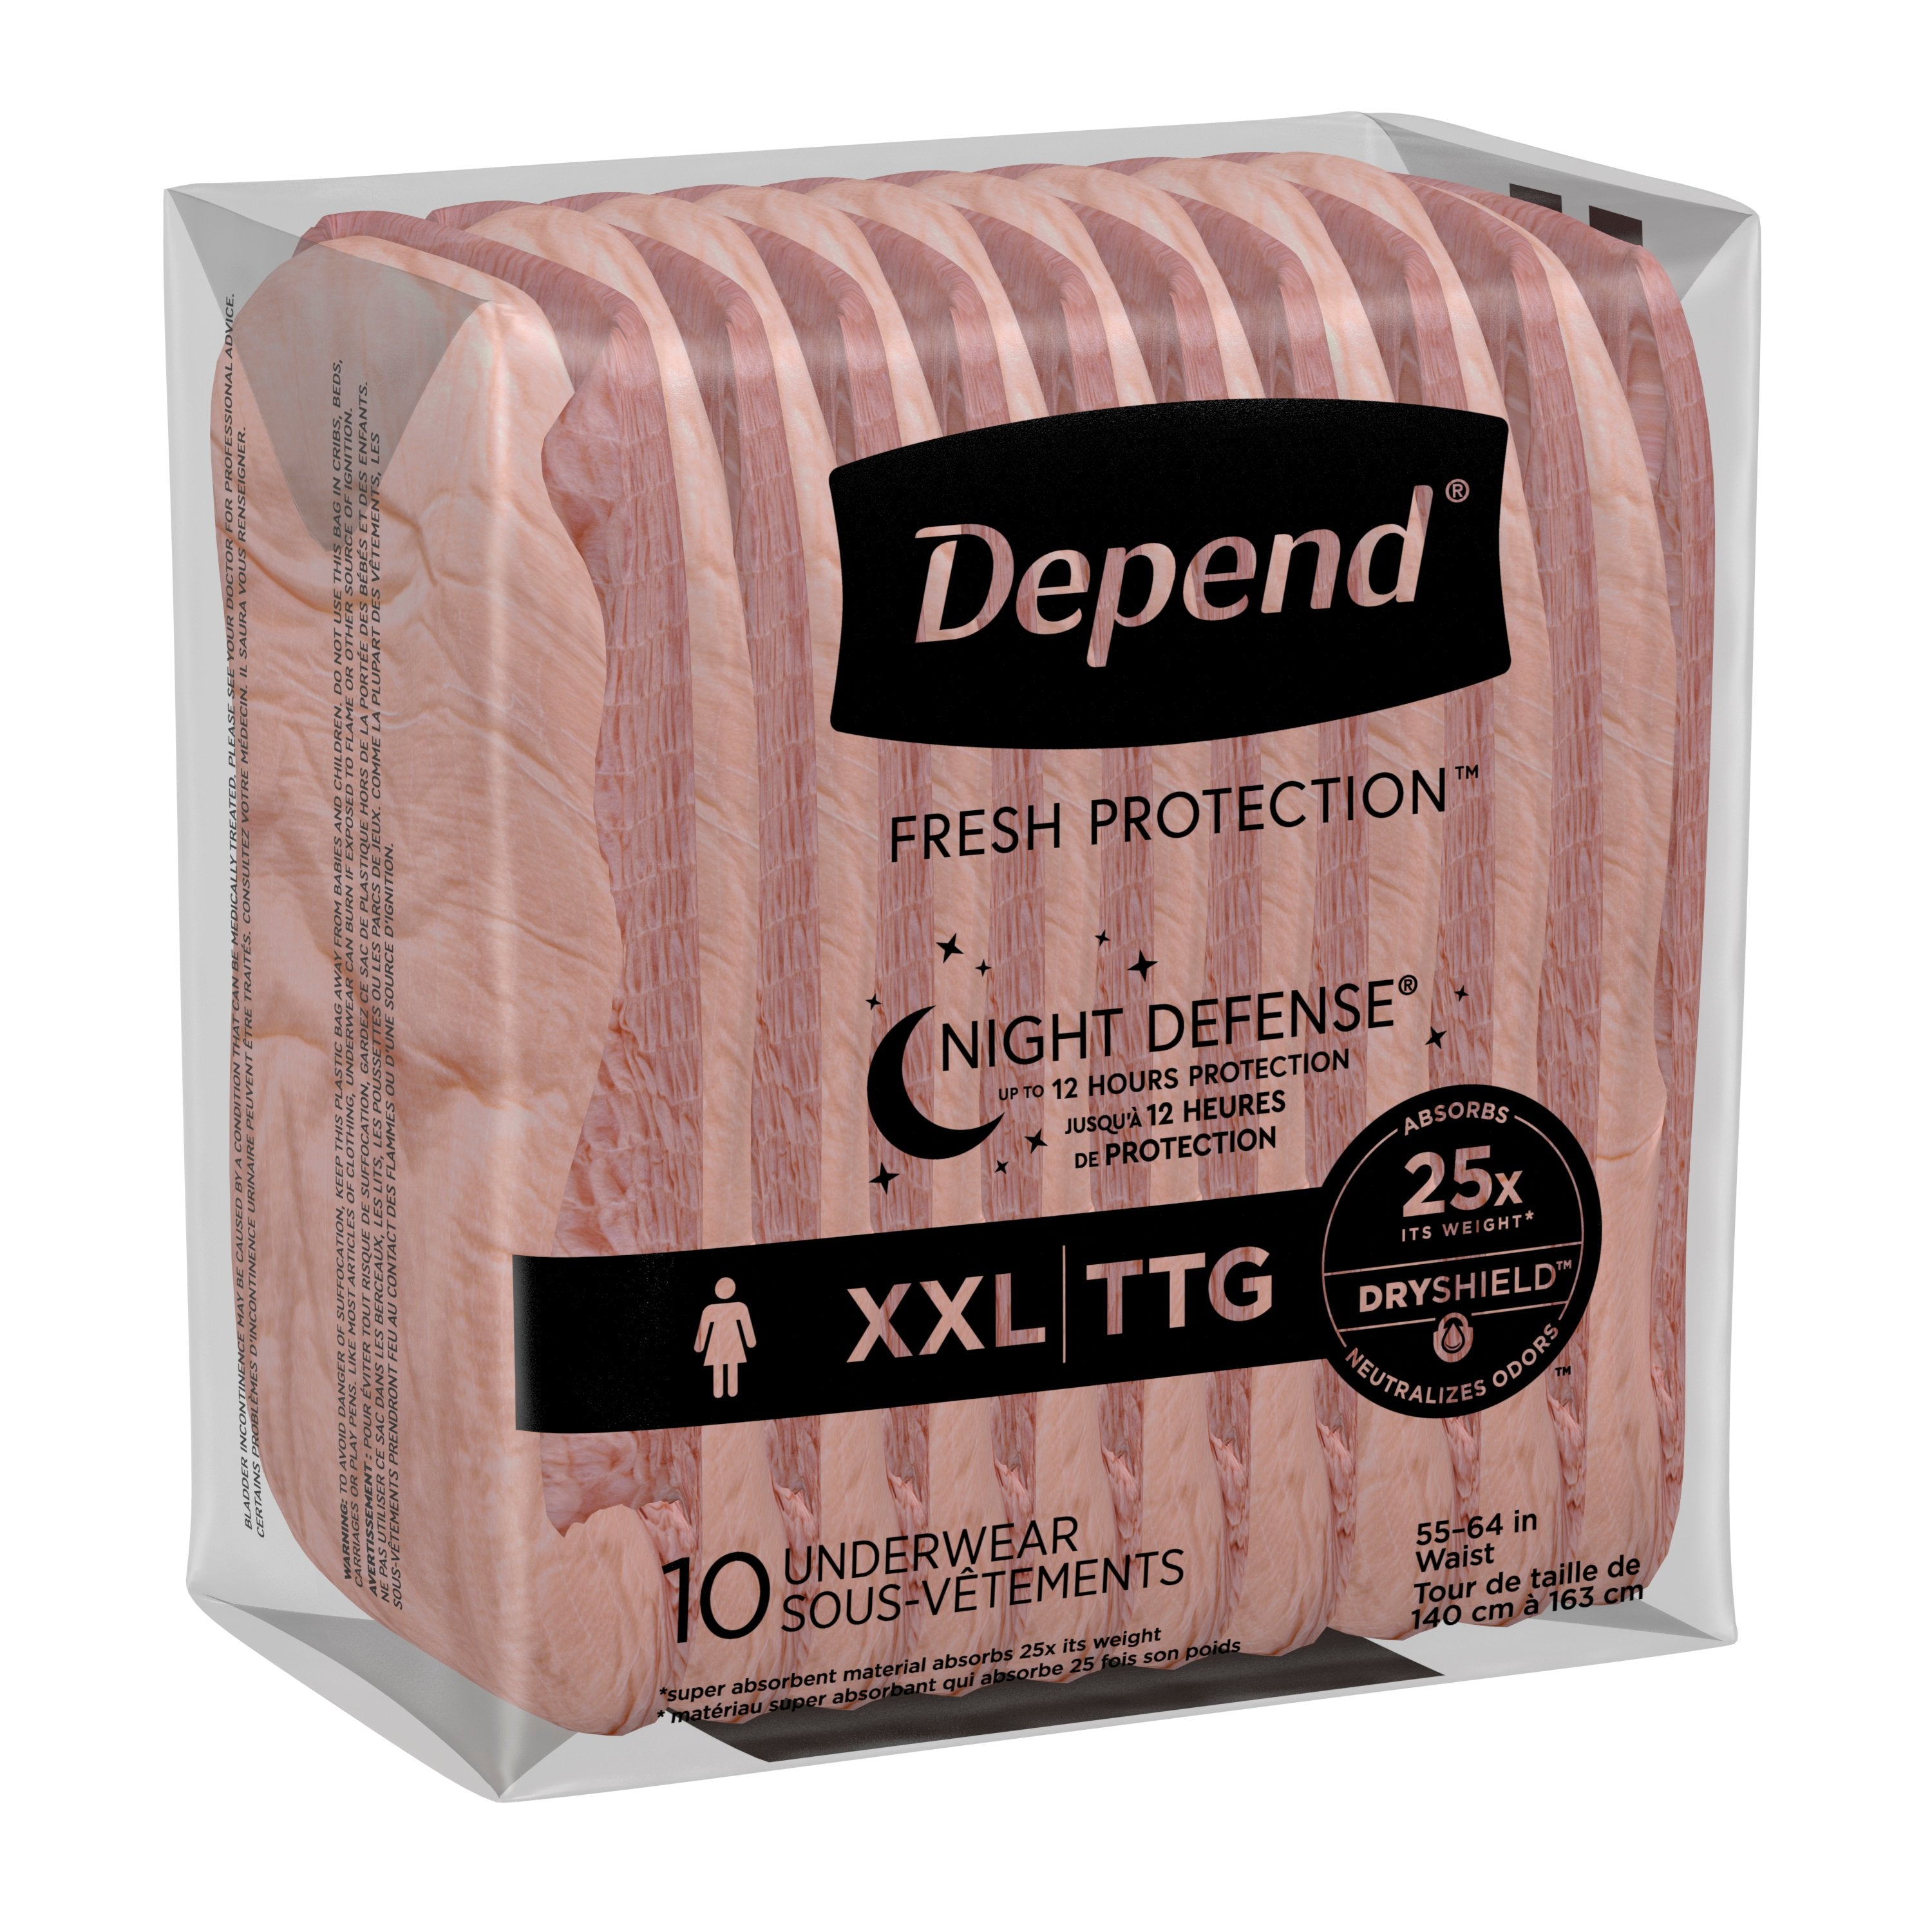 Depend Night Defense Underwear for Women - Value Pack